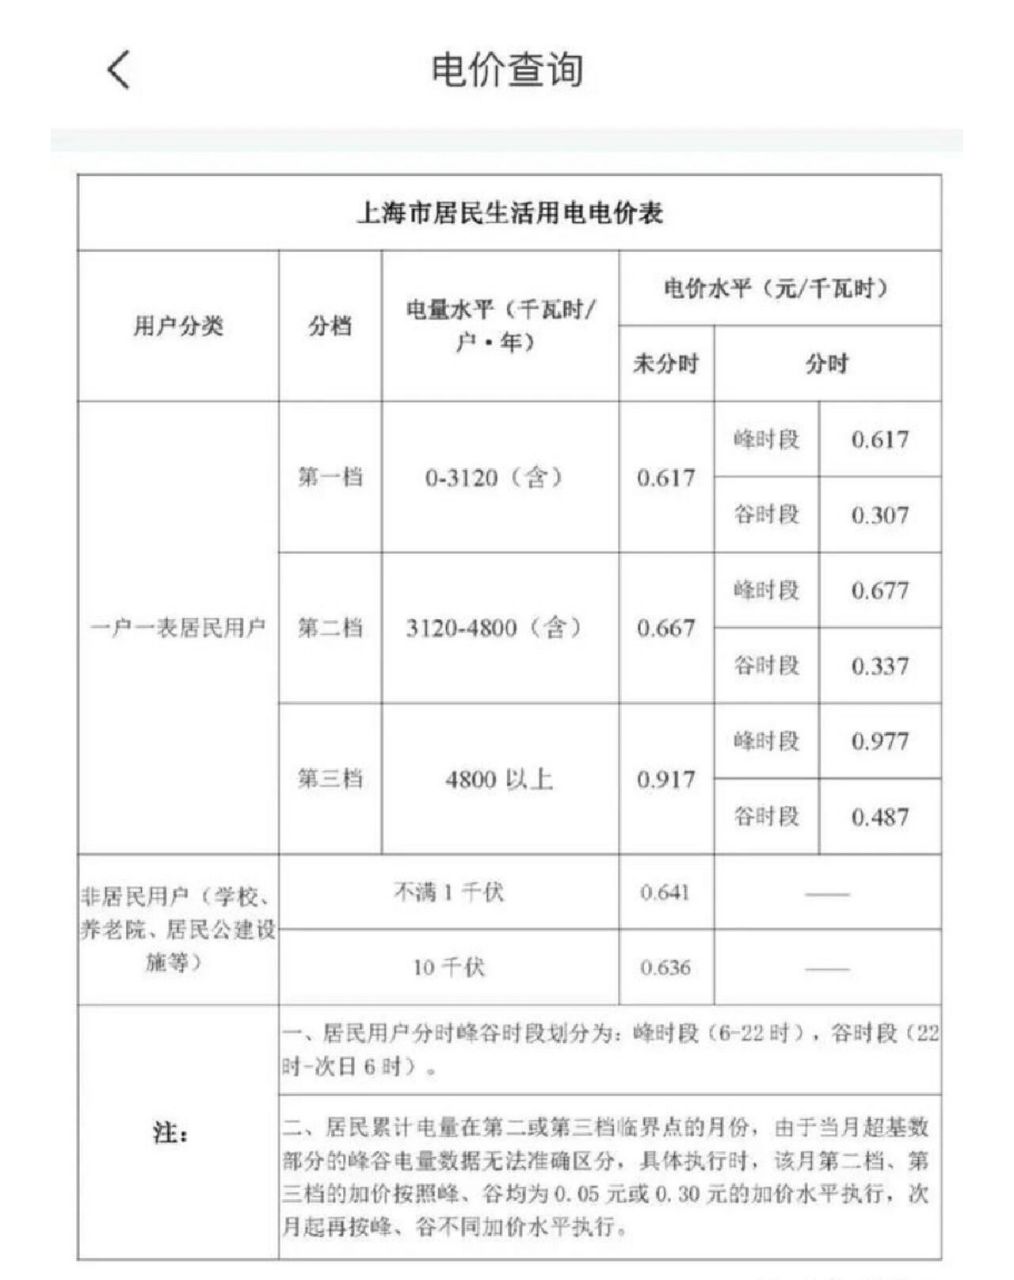 上海阶梯电价,价格对照表 上海阶梯电价,价格对照表